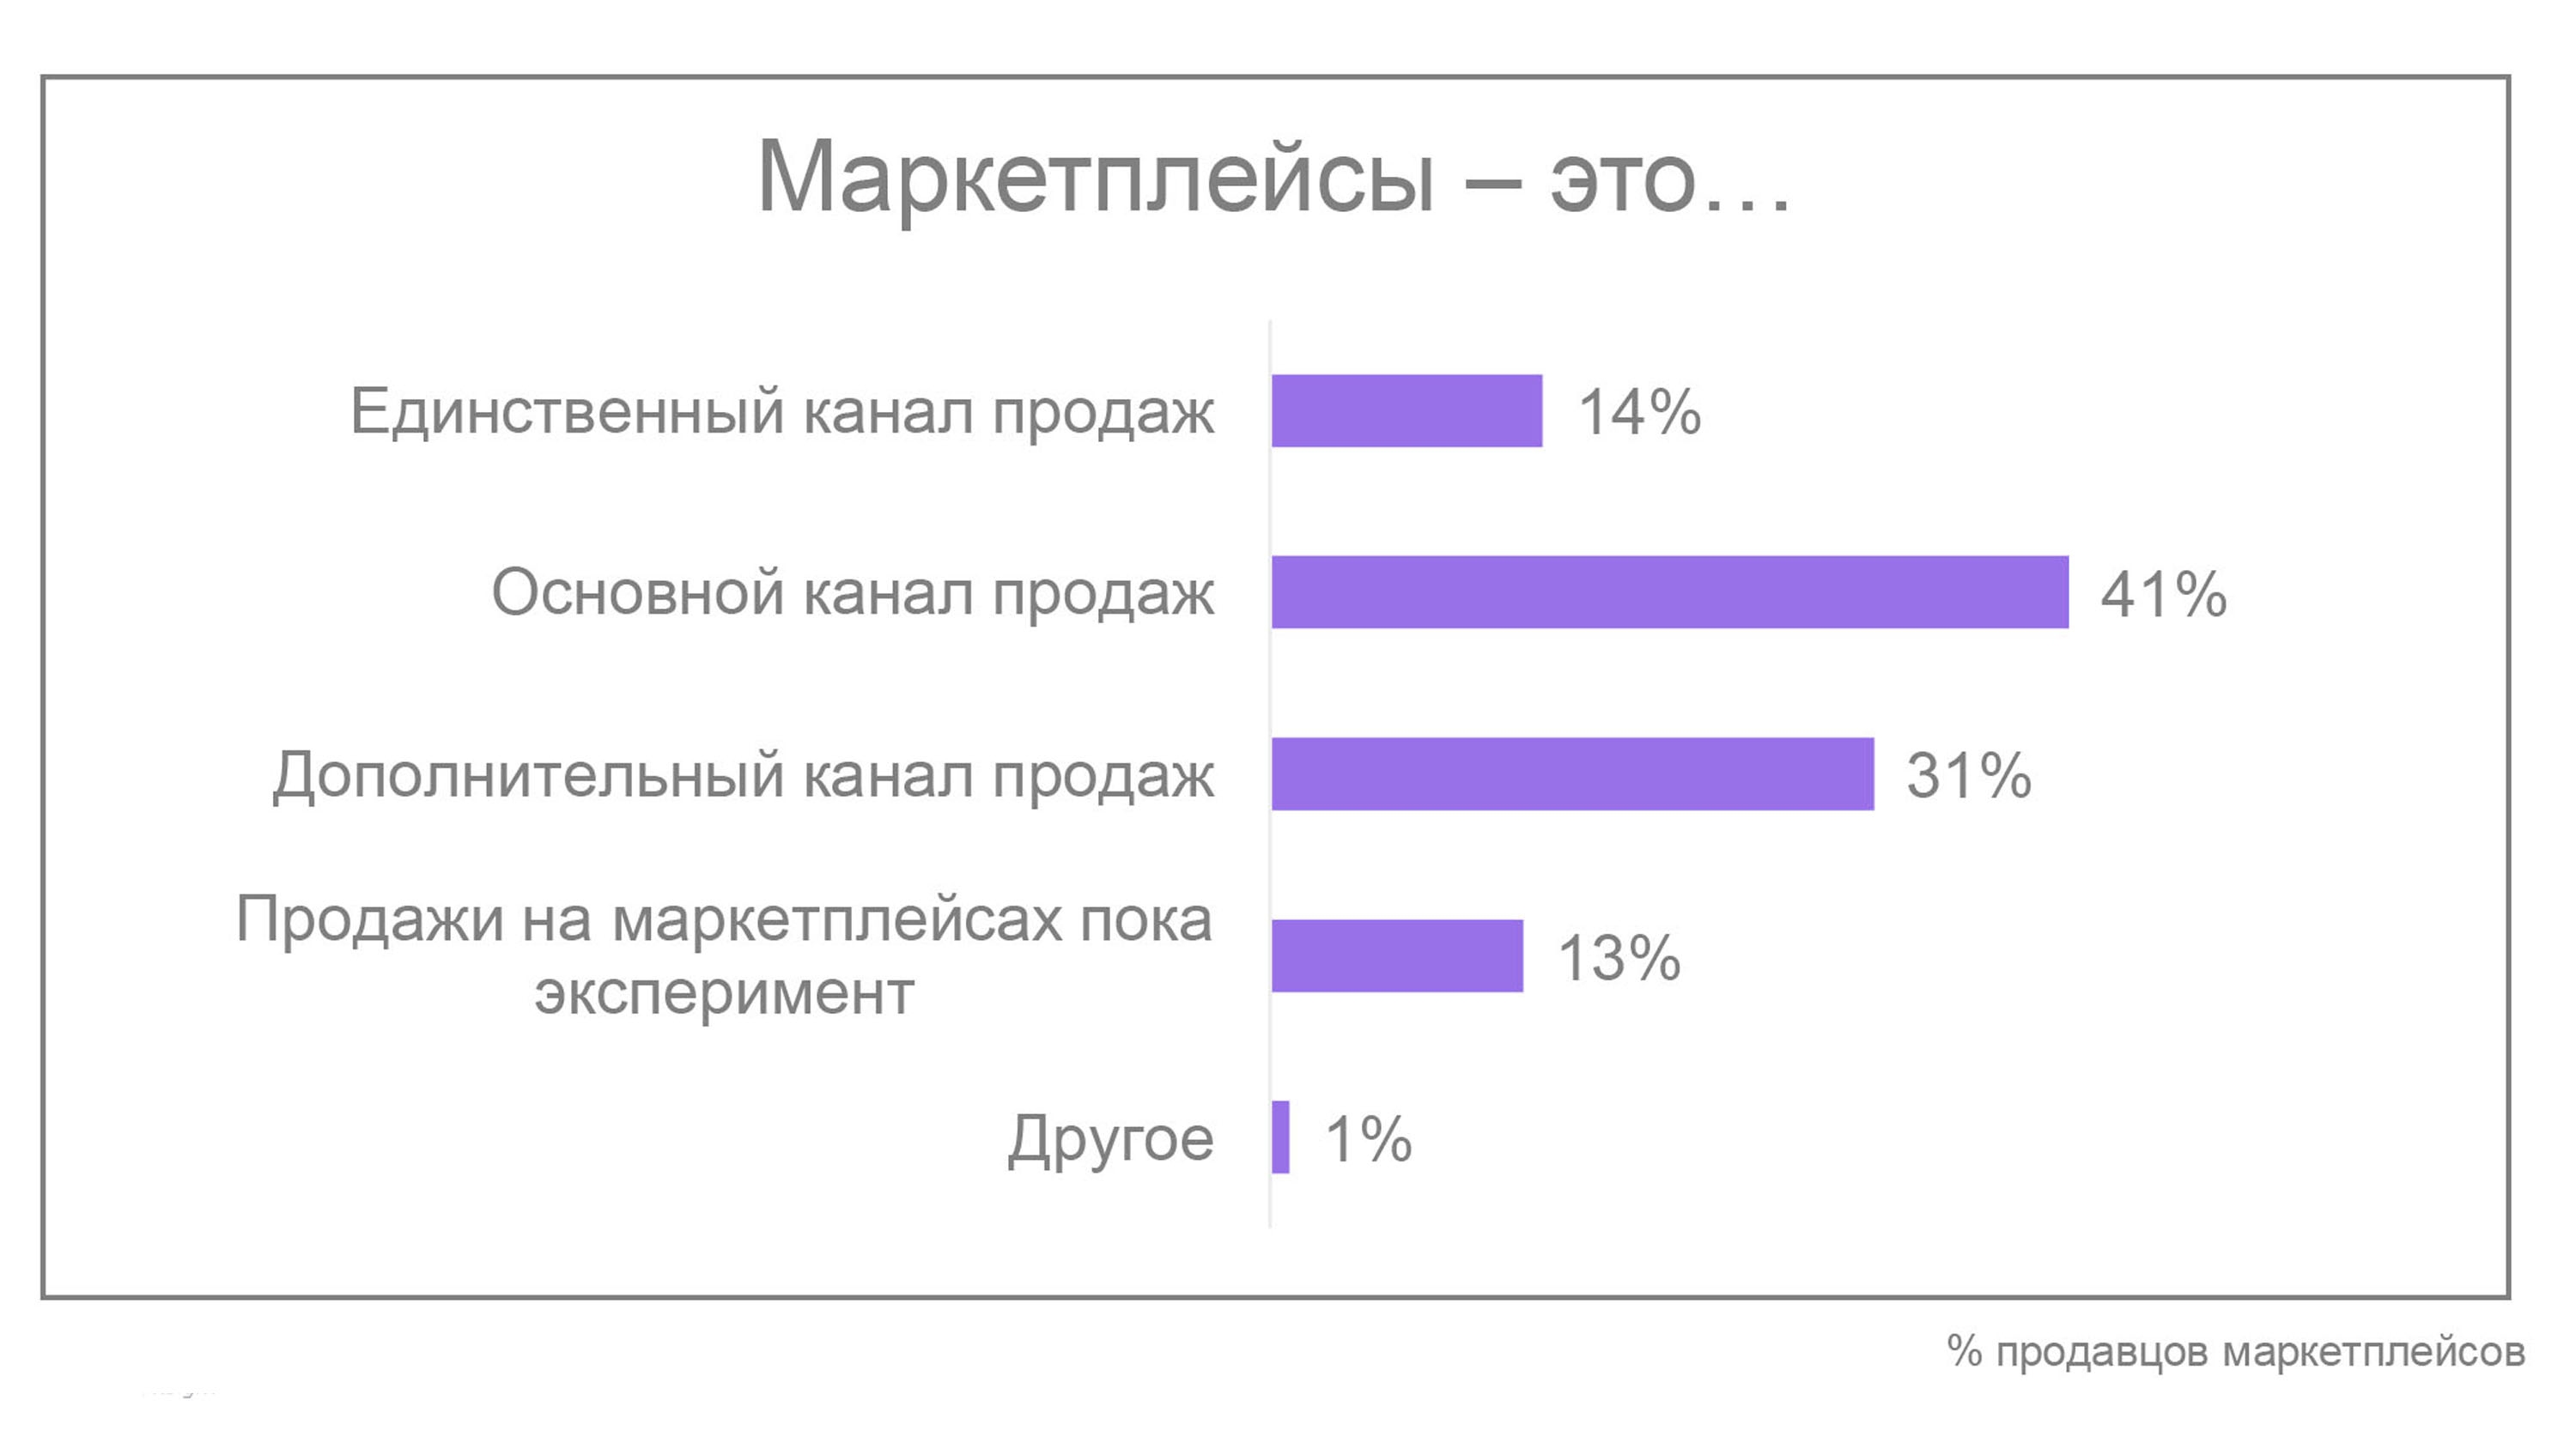 Более чем для половины (55%) селлеров, использующих маркетплейсы для продажи товаров, это основной или единственный канал продаж. Источник Datainsight.ru